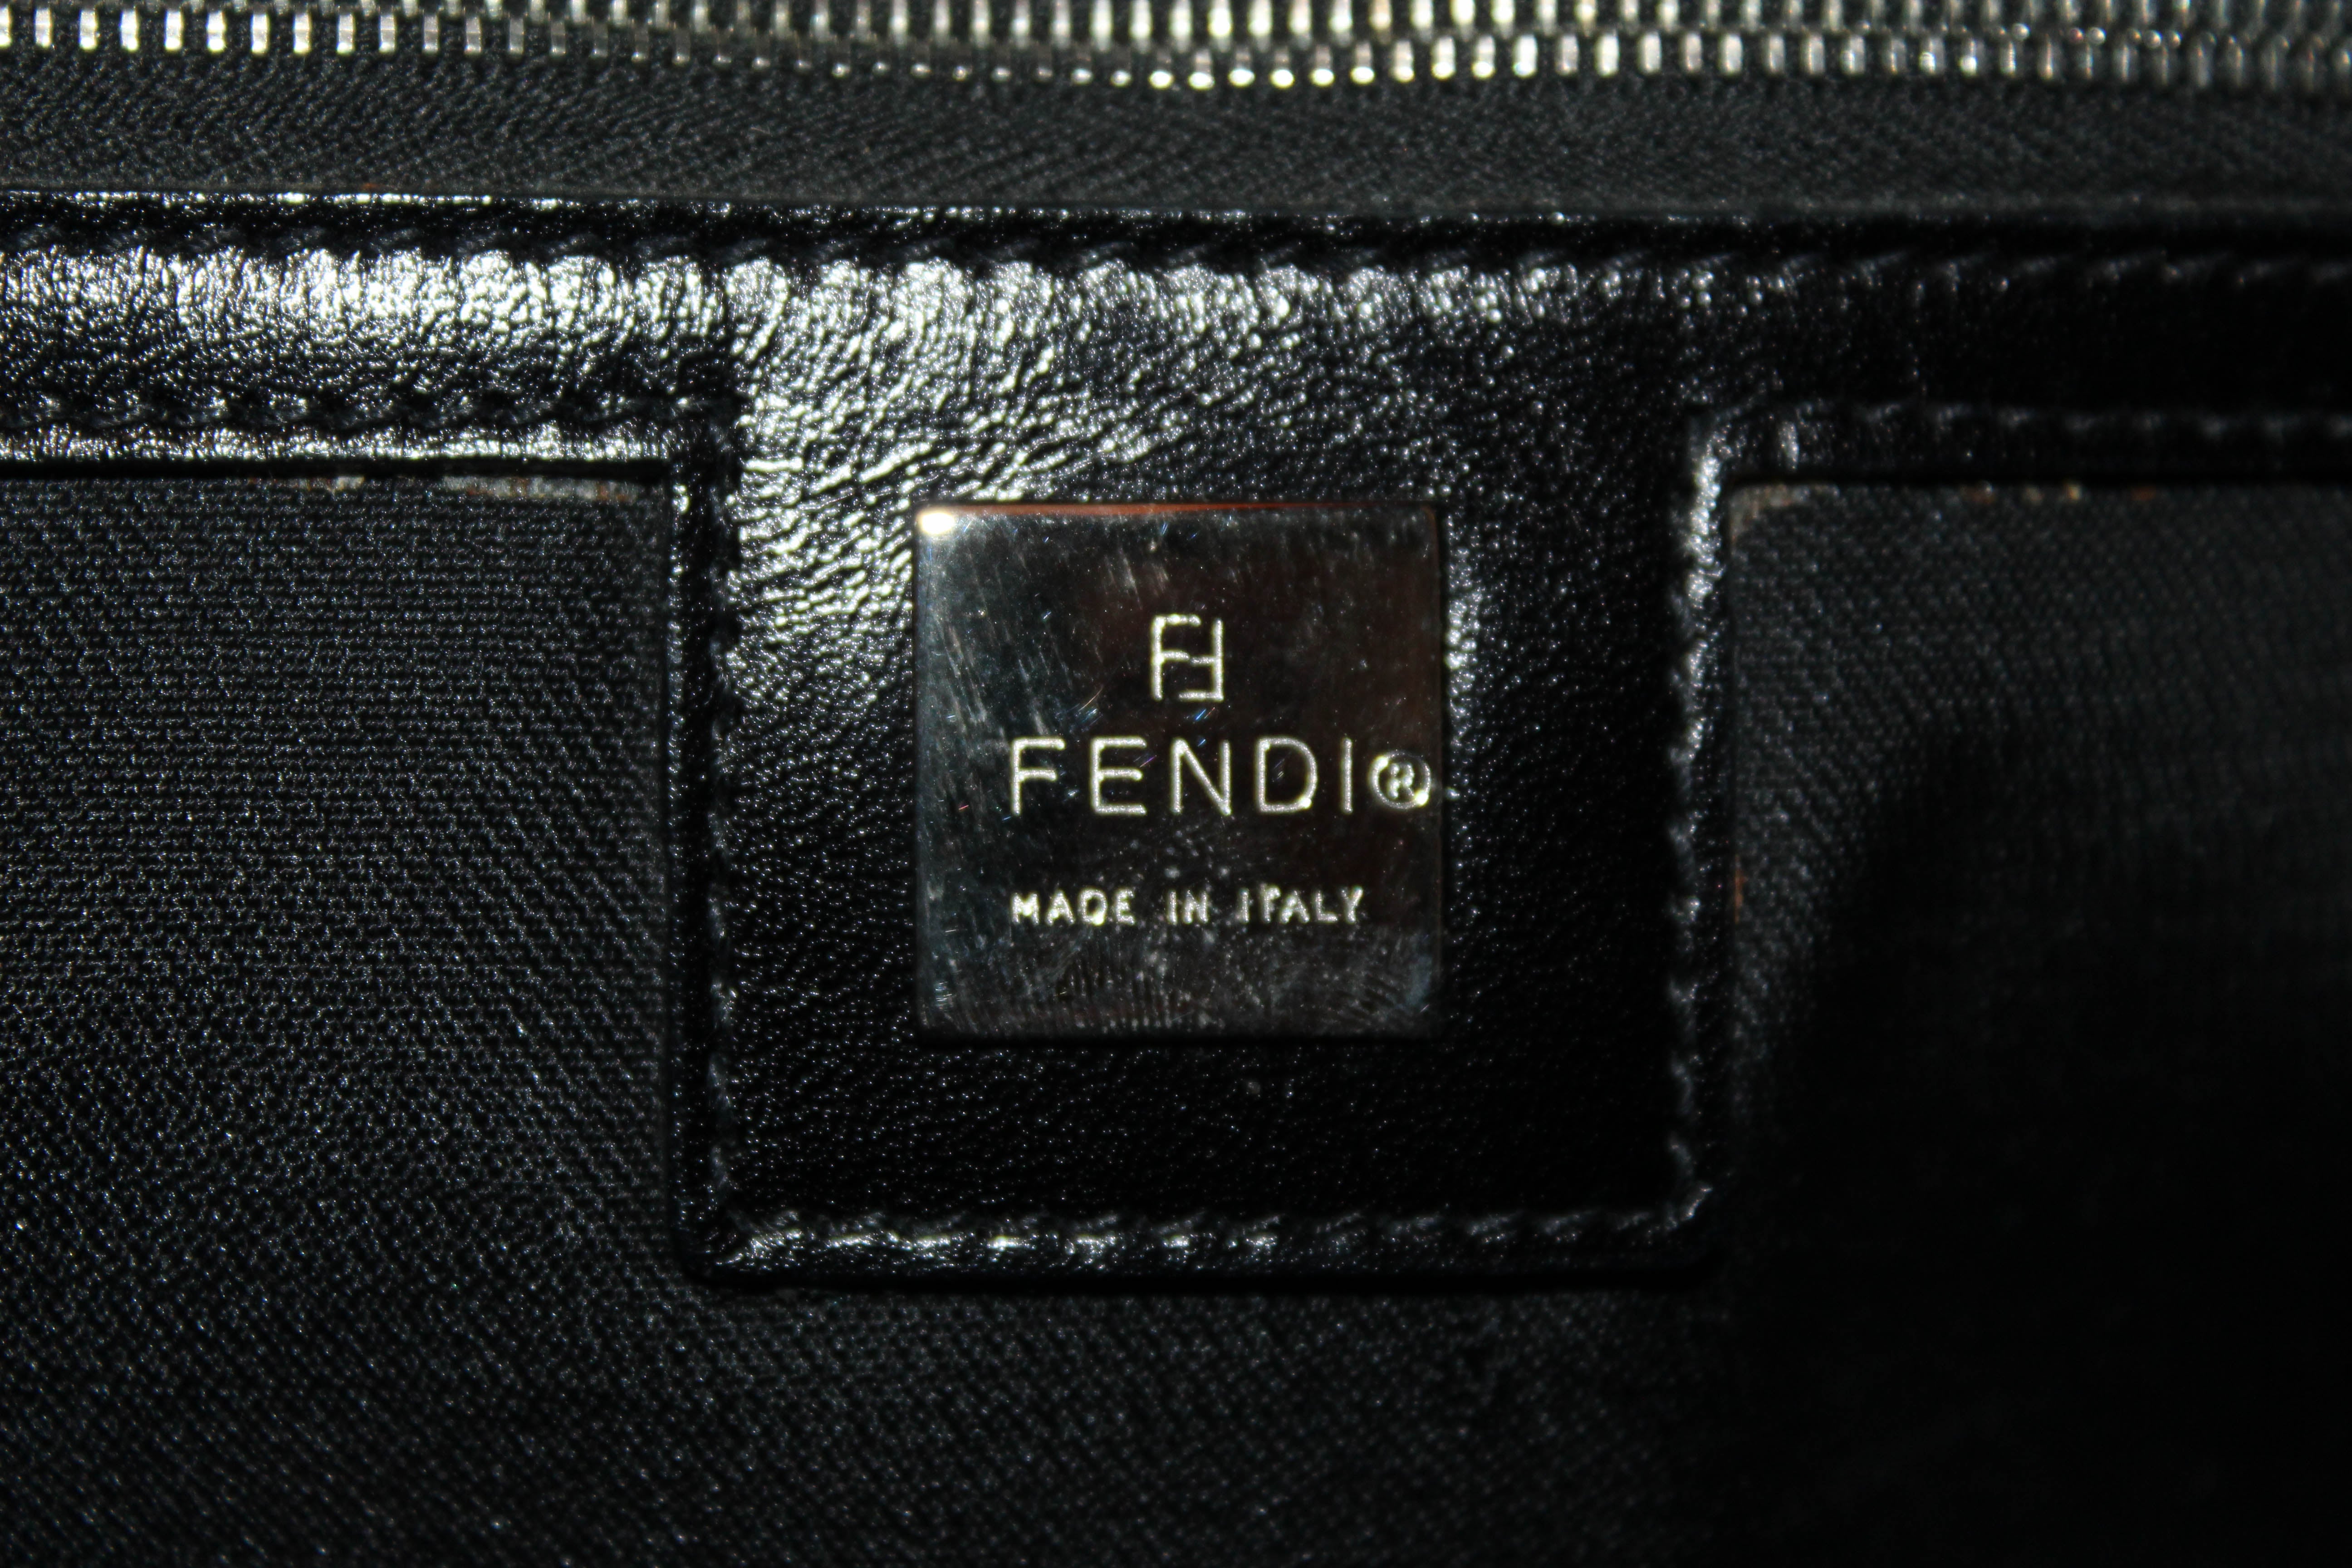 Authentic Fendi Black Suede Leather Medium Tote Shoulder Bag